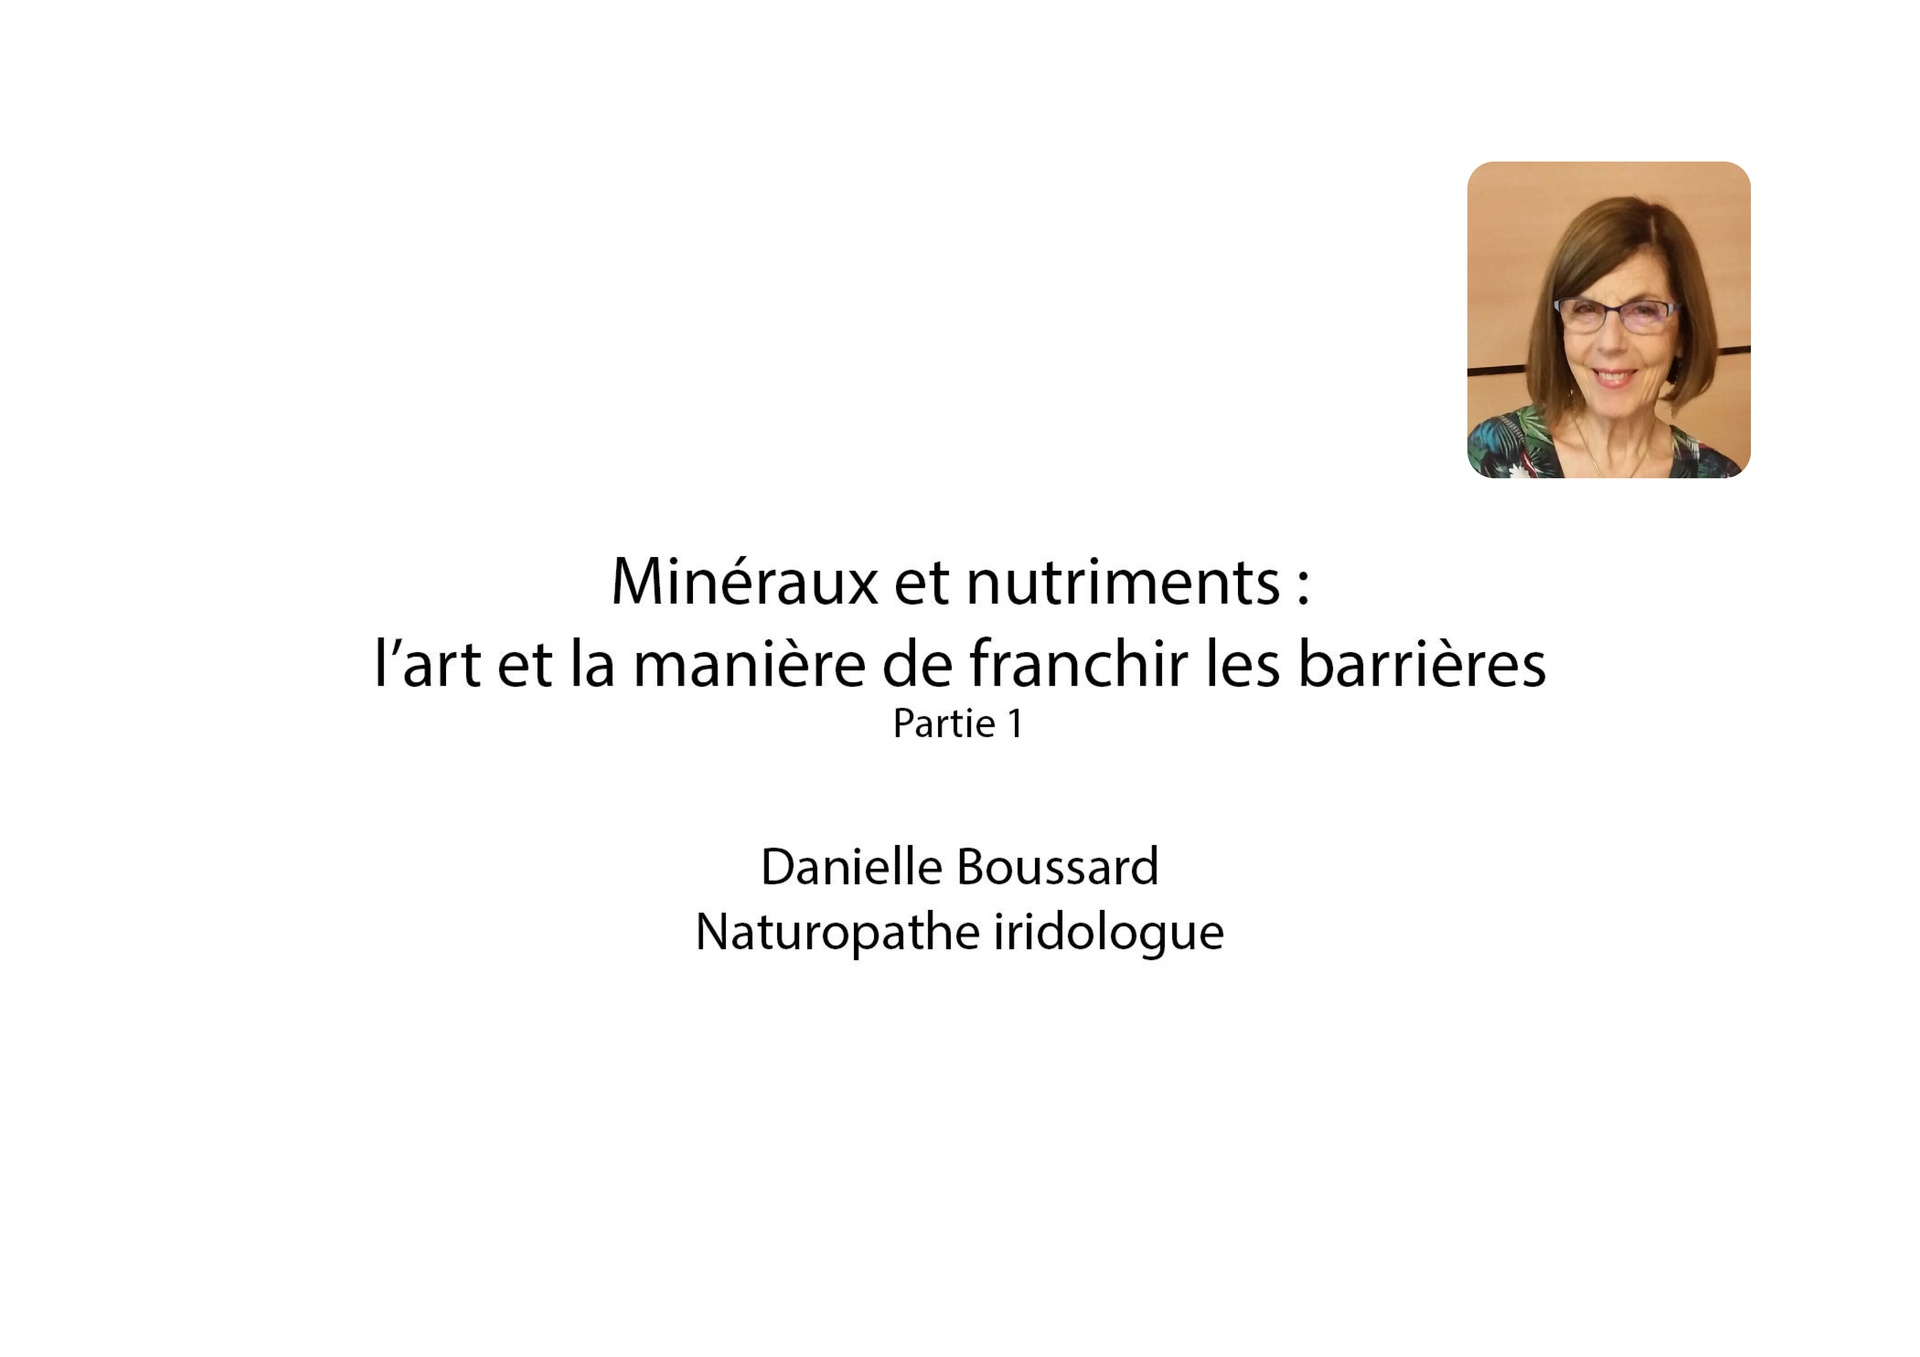 Minéraux et nutriments : l’art et la manière de franchir les barrières - Part 1 - Danielle Boussard